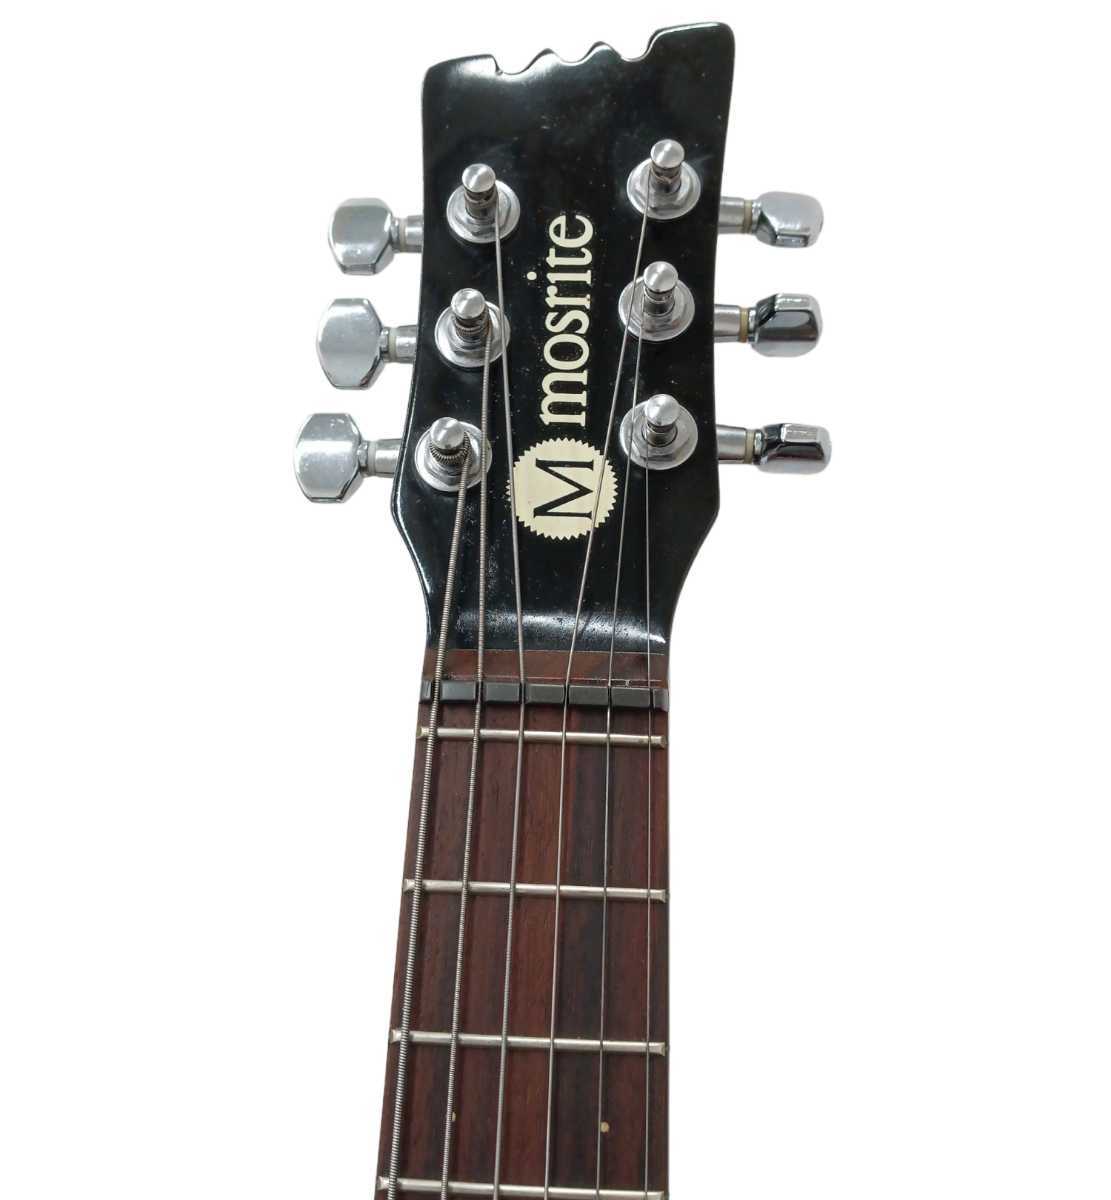 【動作確認済み】mosrite モズライト ミニギター エレキギター ギター Mini Guitar Black 黒